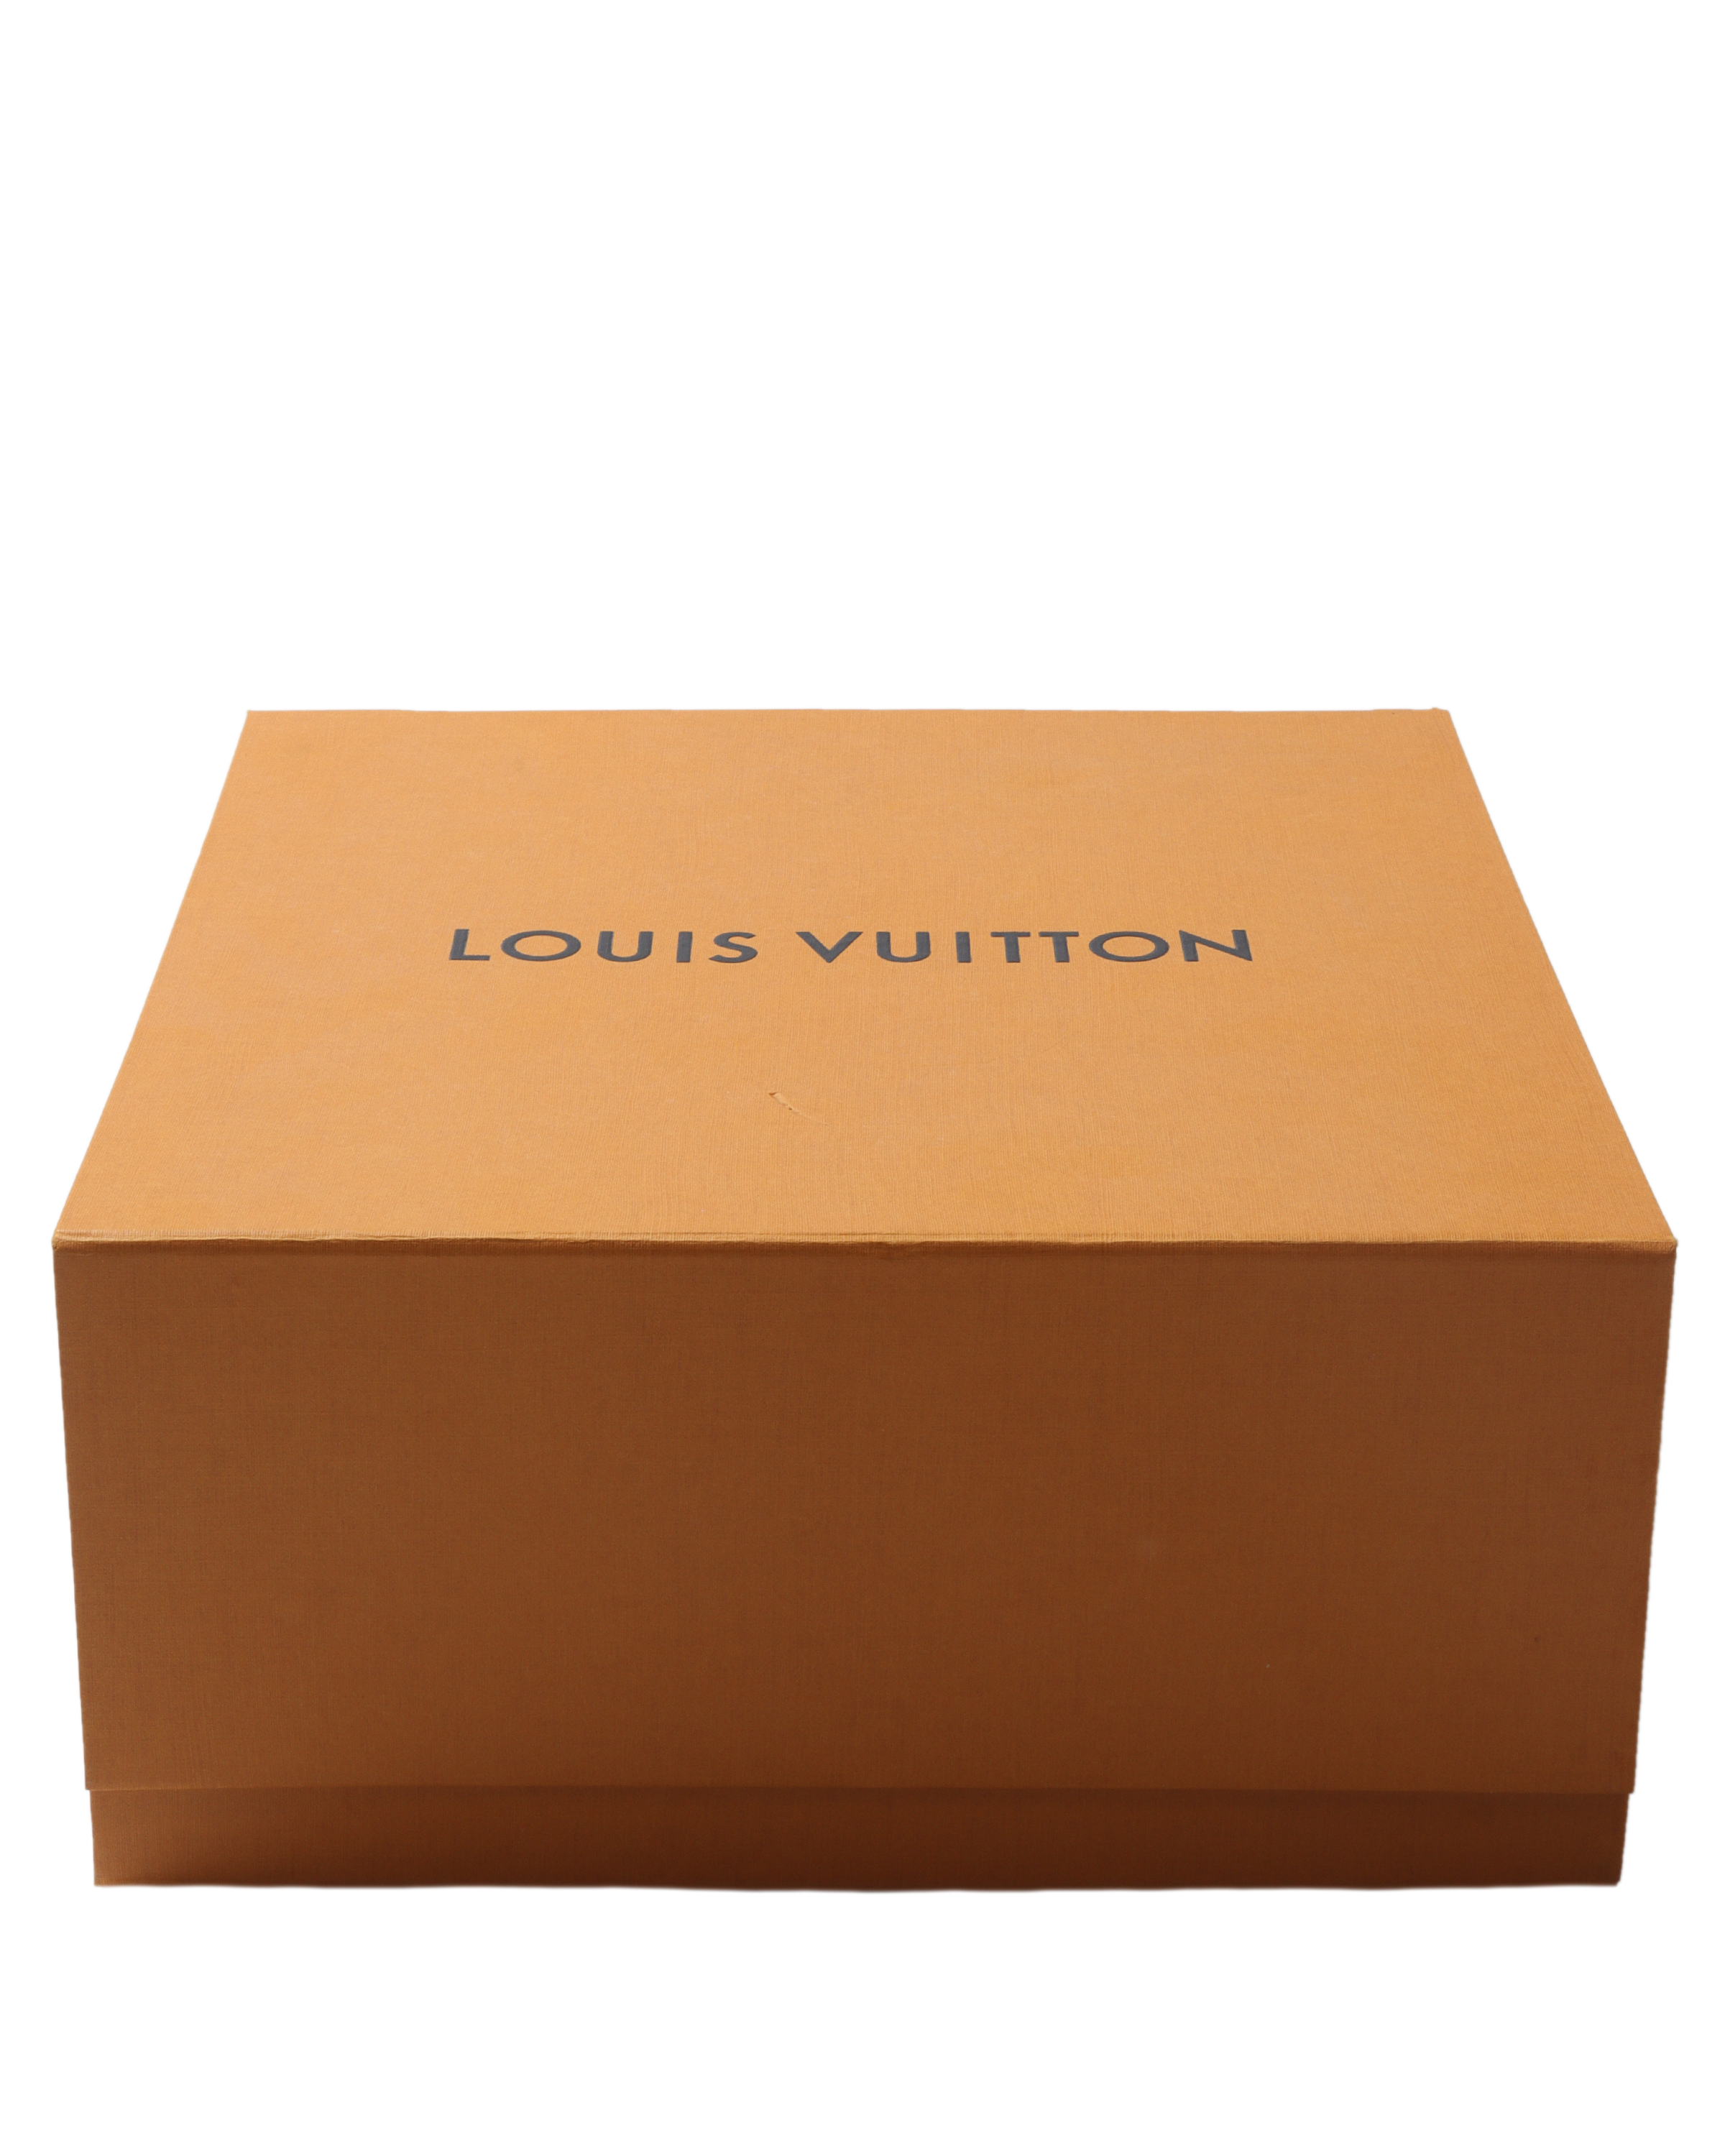 Louis Vuitton, Vivienne LV World Tour